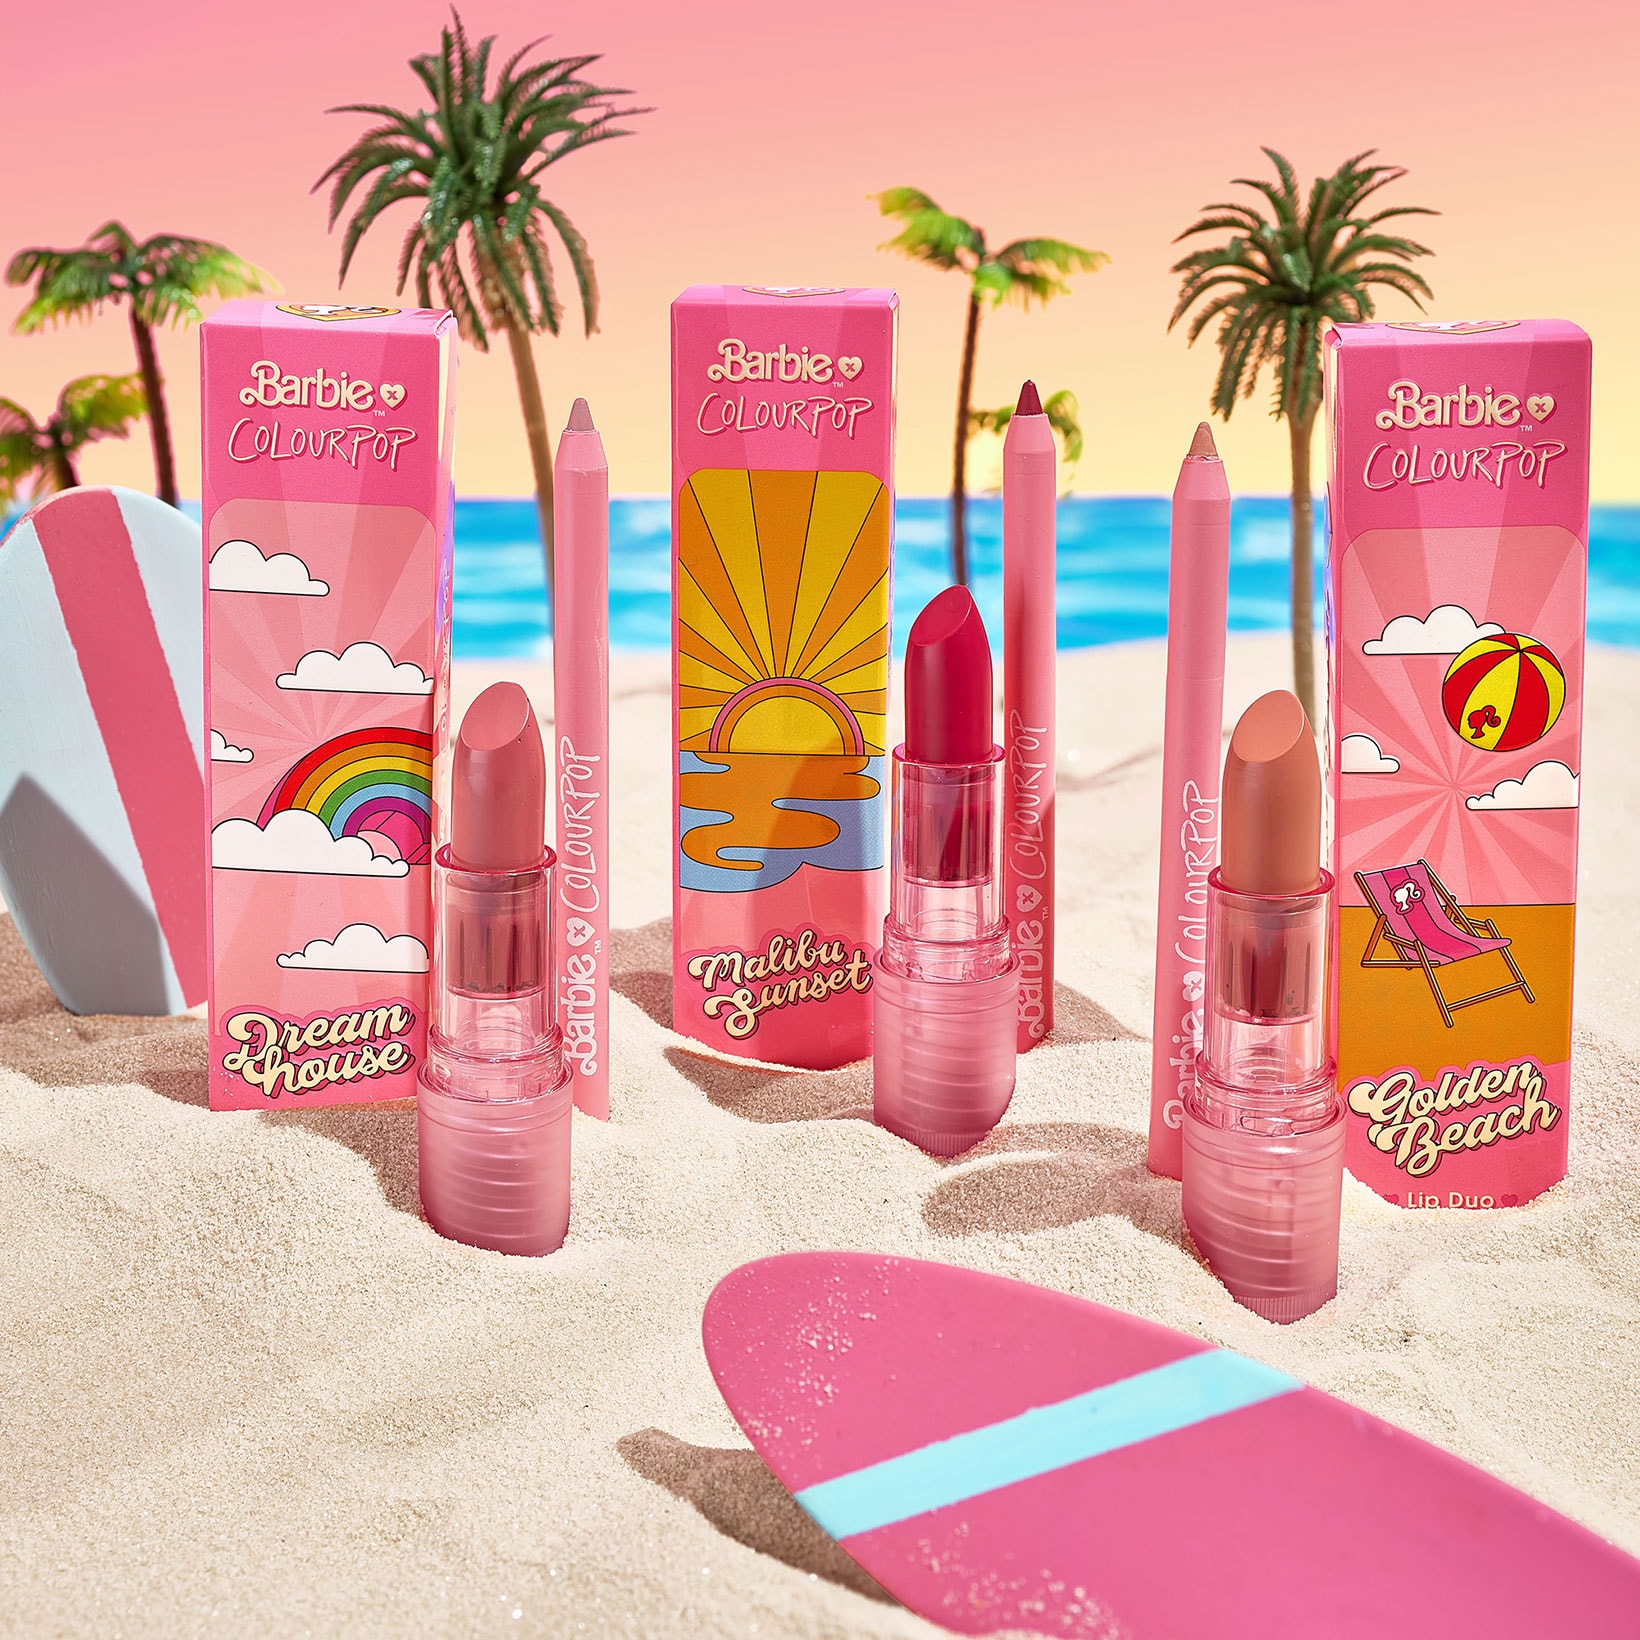 malibu barbie colourpop cosmetics 50th anniversary collaboration lipsticks duo beach